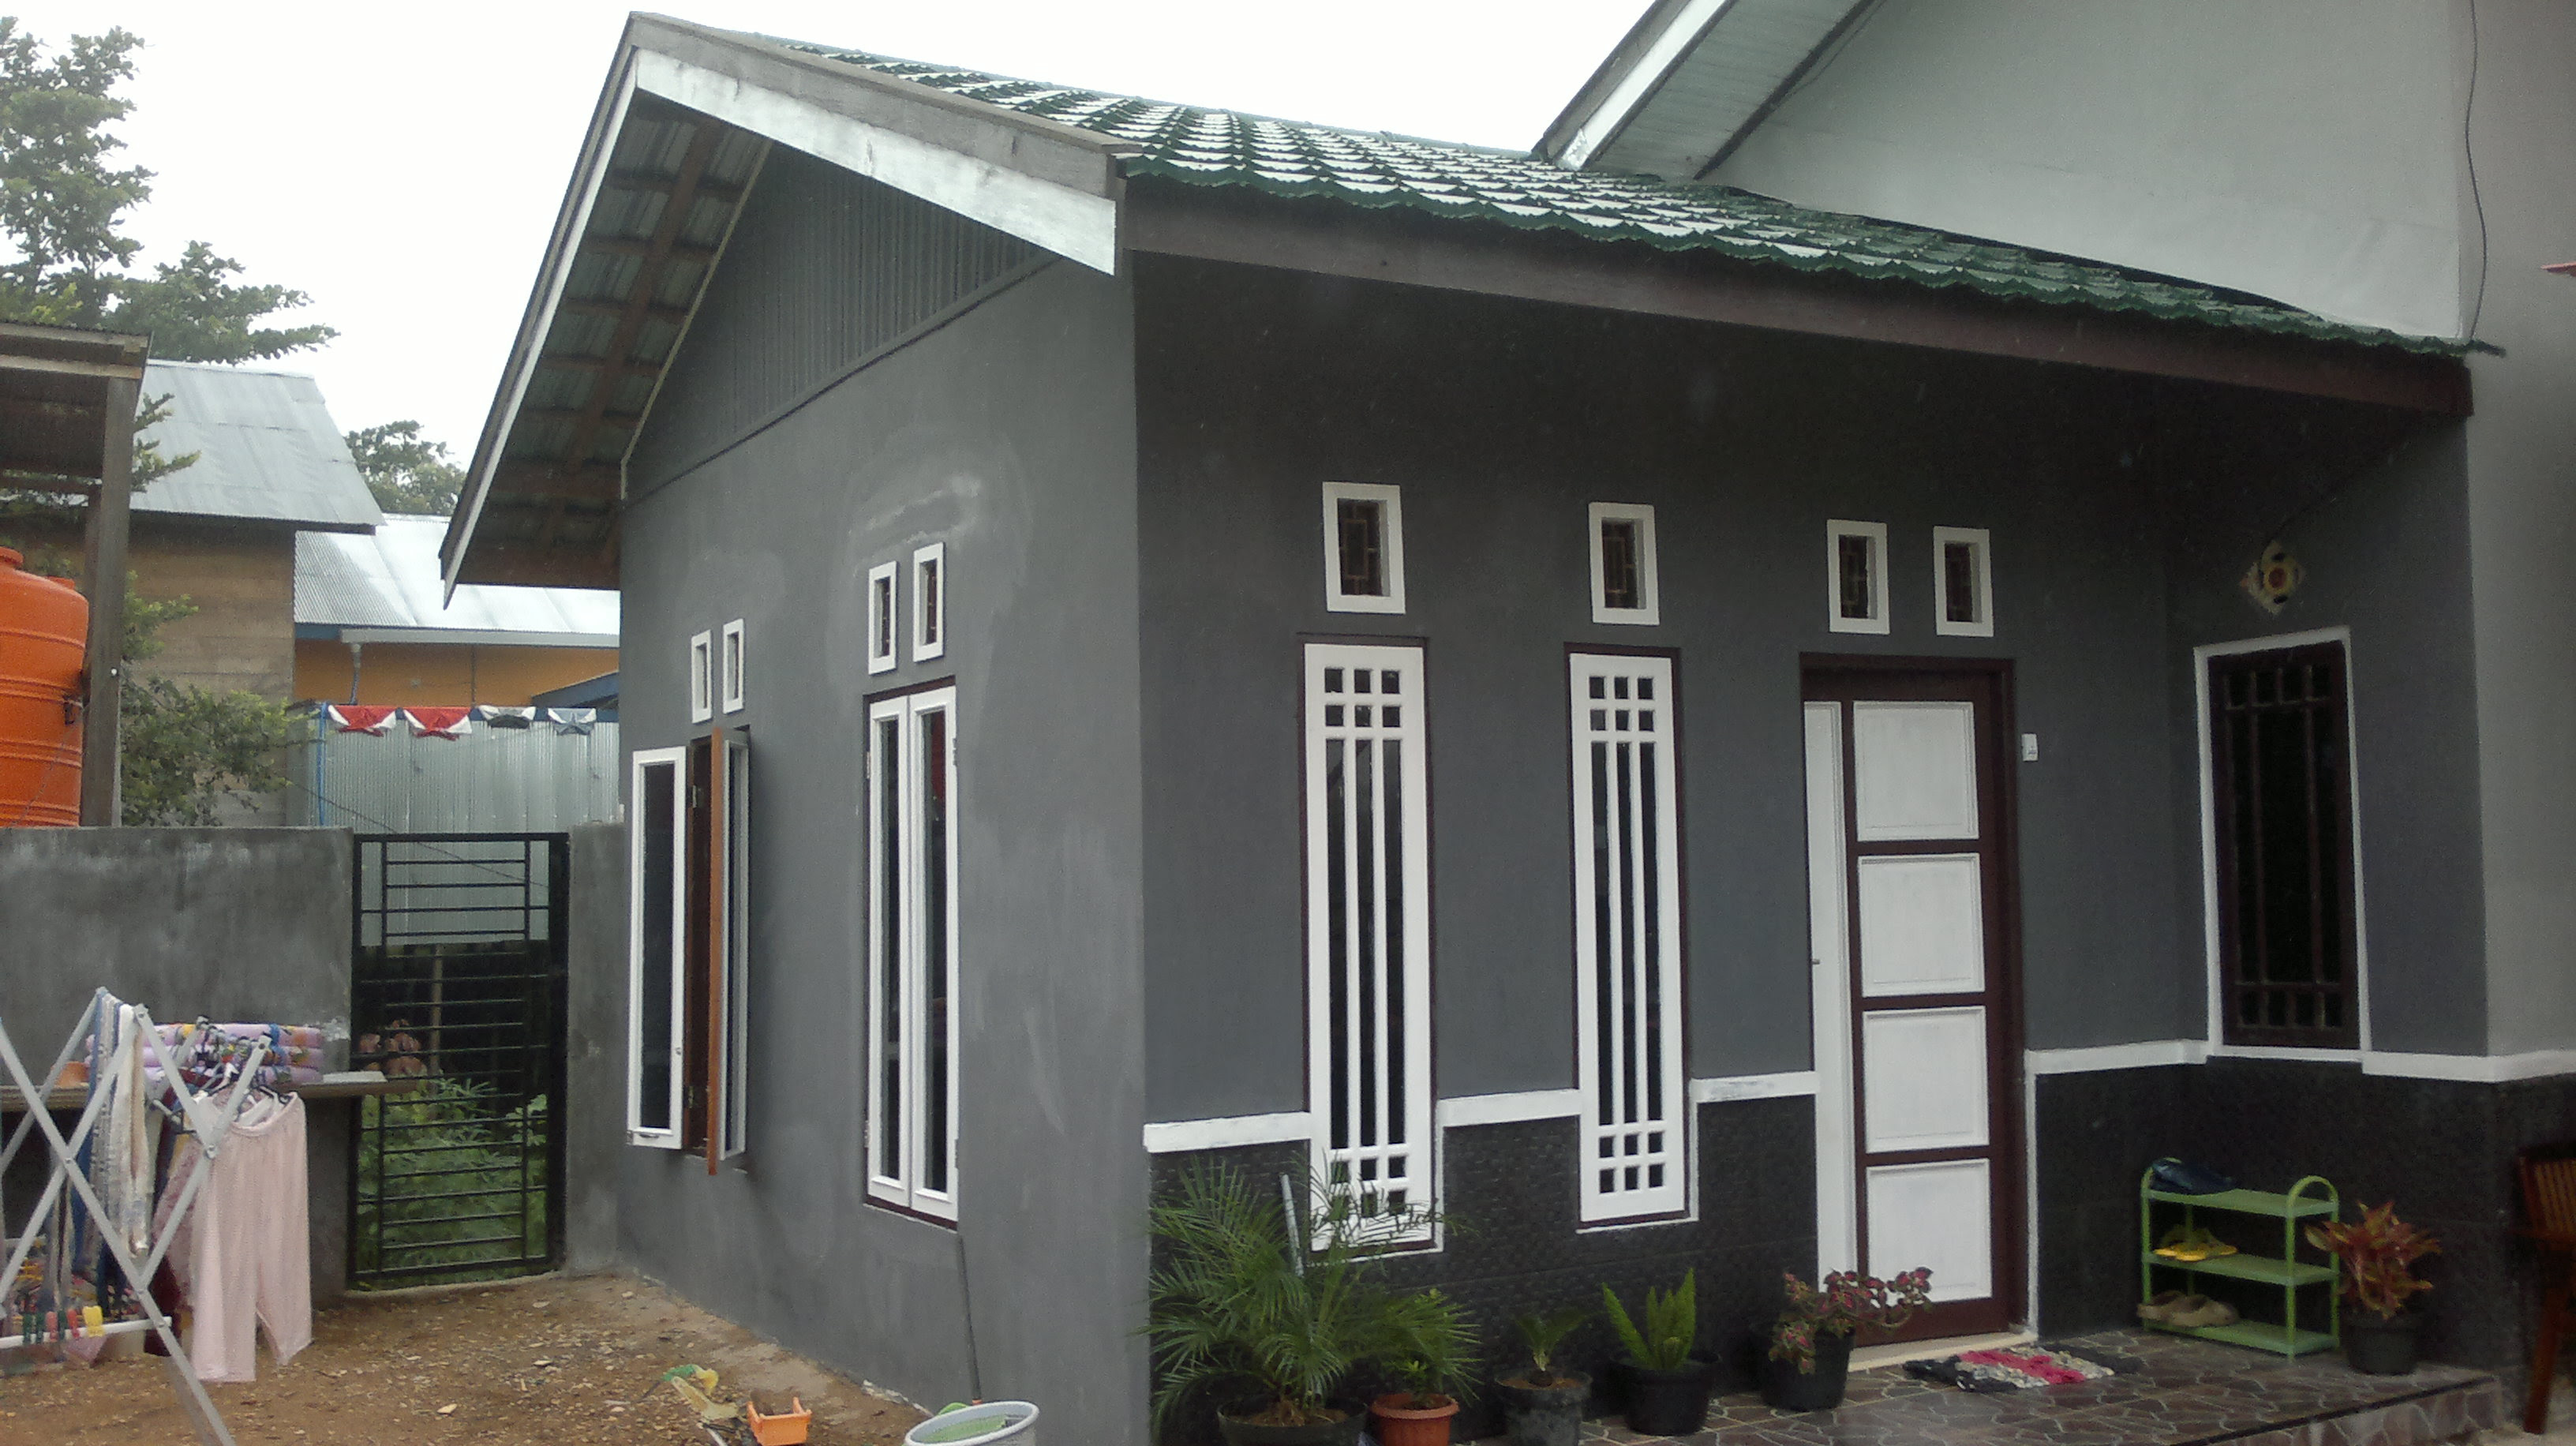  Rumah  Minimalis Pintu  Depan Dan Samping  Model  Rumah  